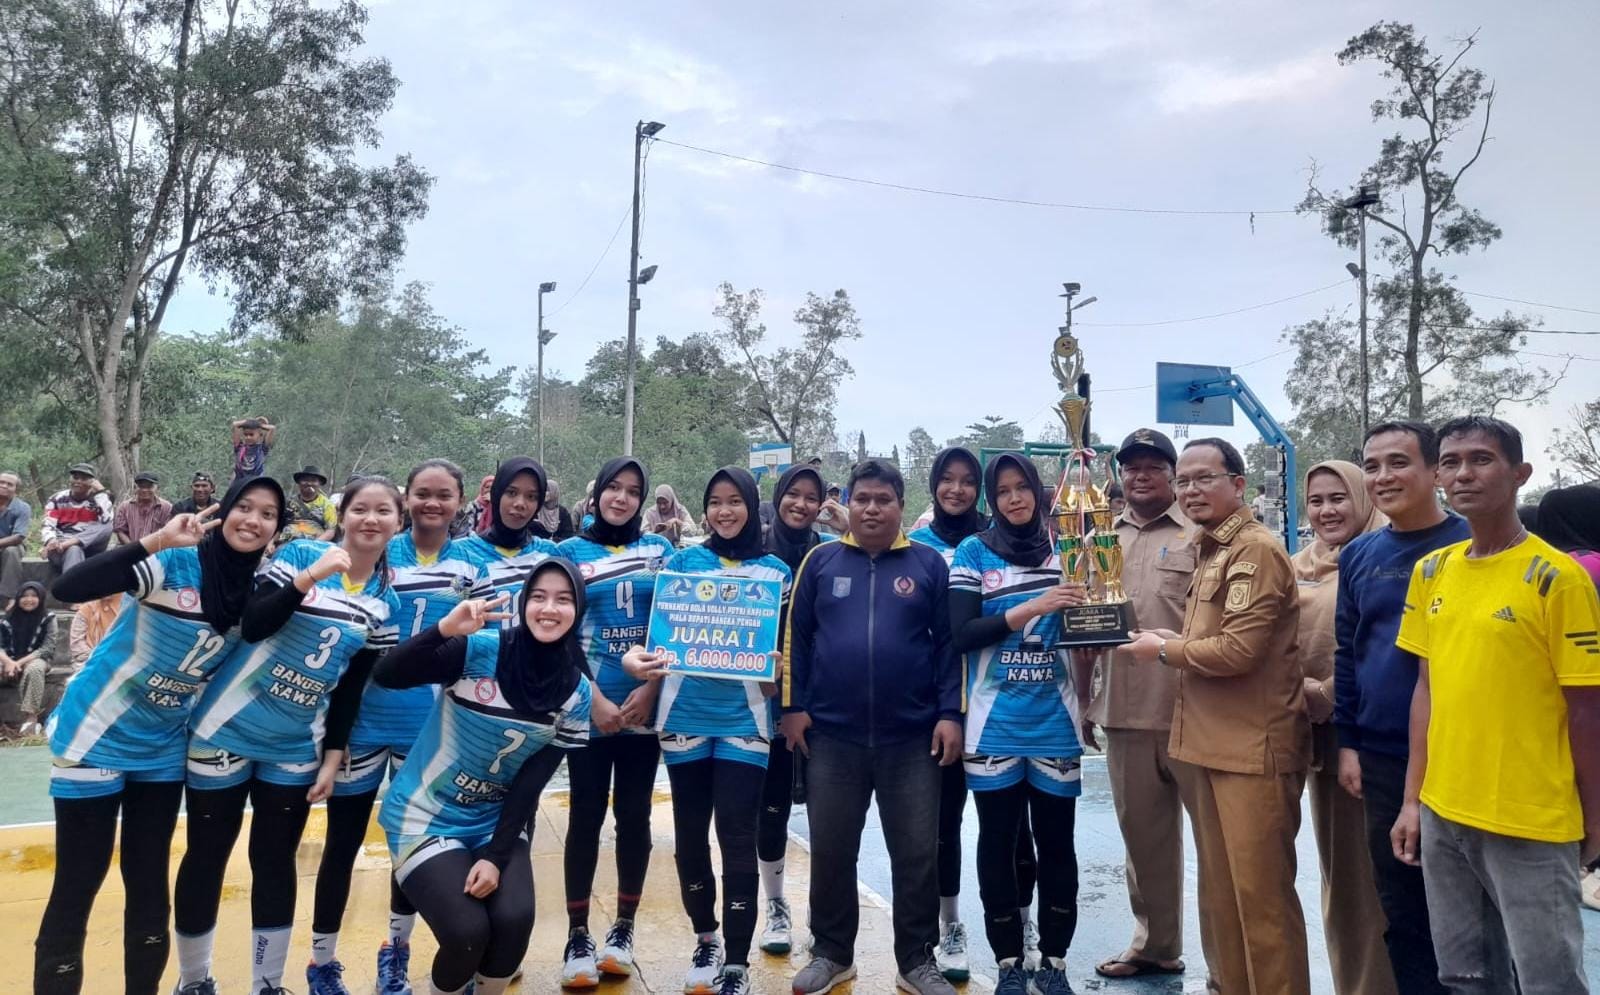 Bangso Kawa Nibung Bawa Trofi Juara Turnamen Voli Putri KNPI Cup Bateng